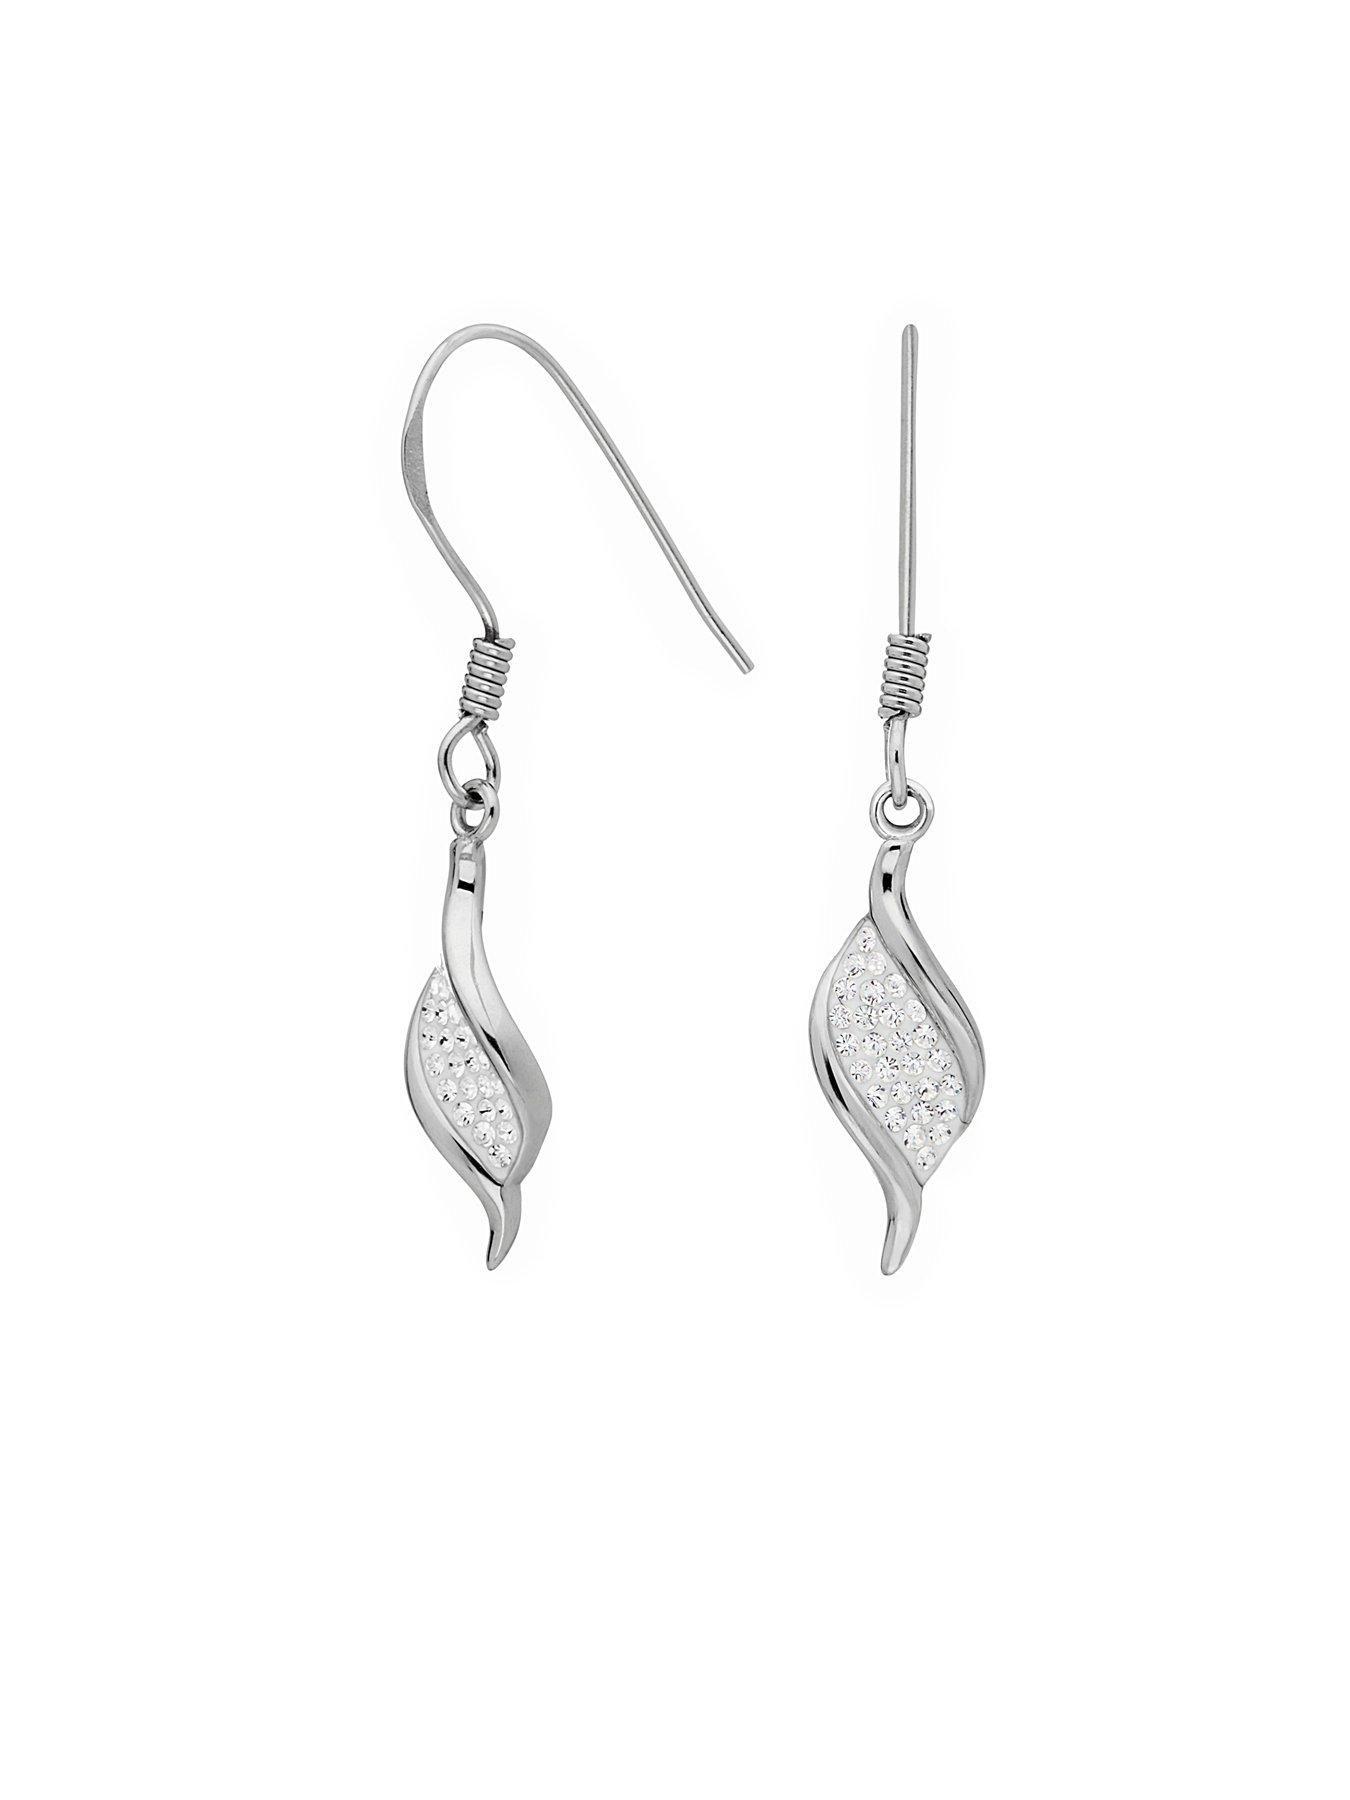 Evoke Sterling Silver Crystal Twist Earrings and Pendant Set